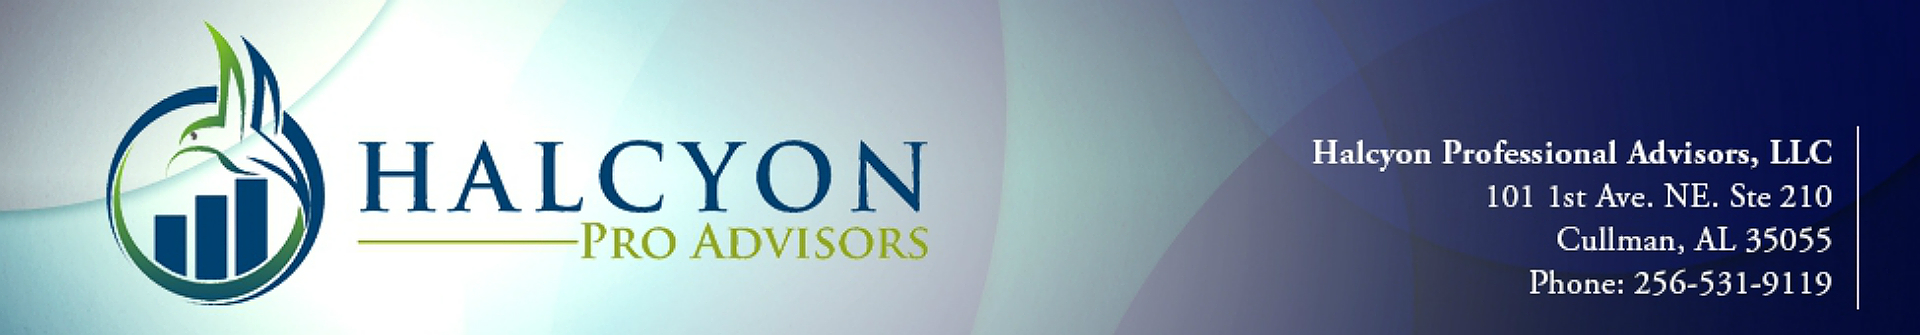 HALCYON PROFESSIONAL ADVISORS, LLC